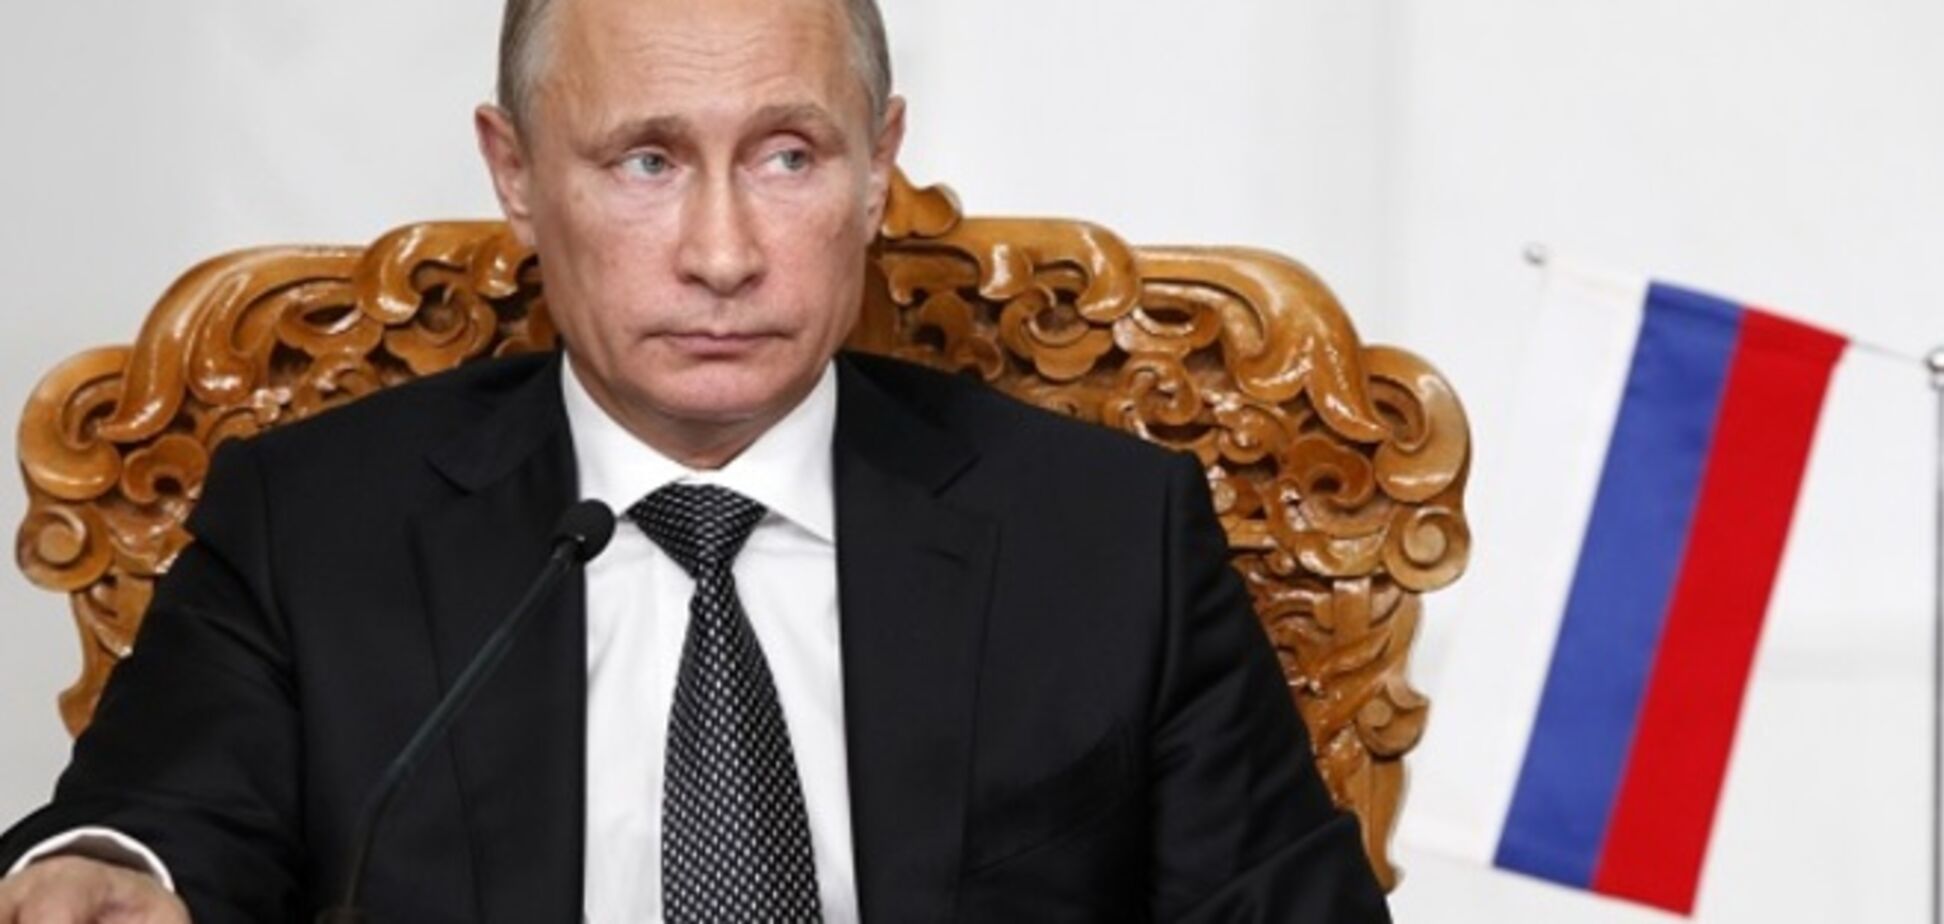 Путин угрожал Порошенко и требовал изменить Соглашение об ассоциации